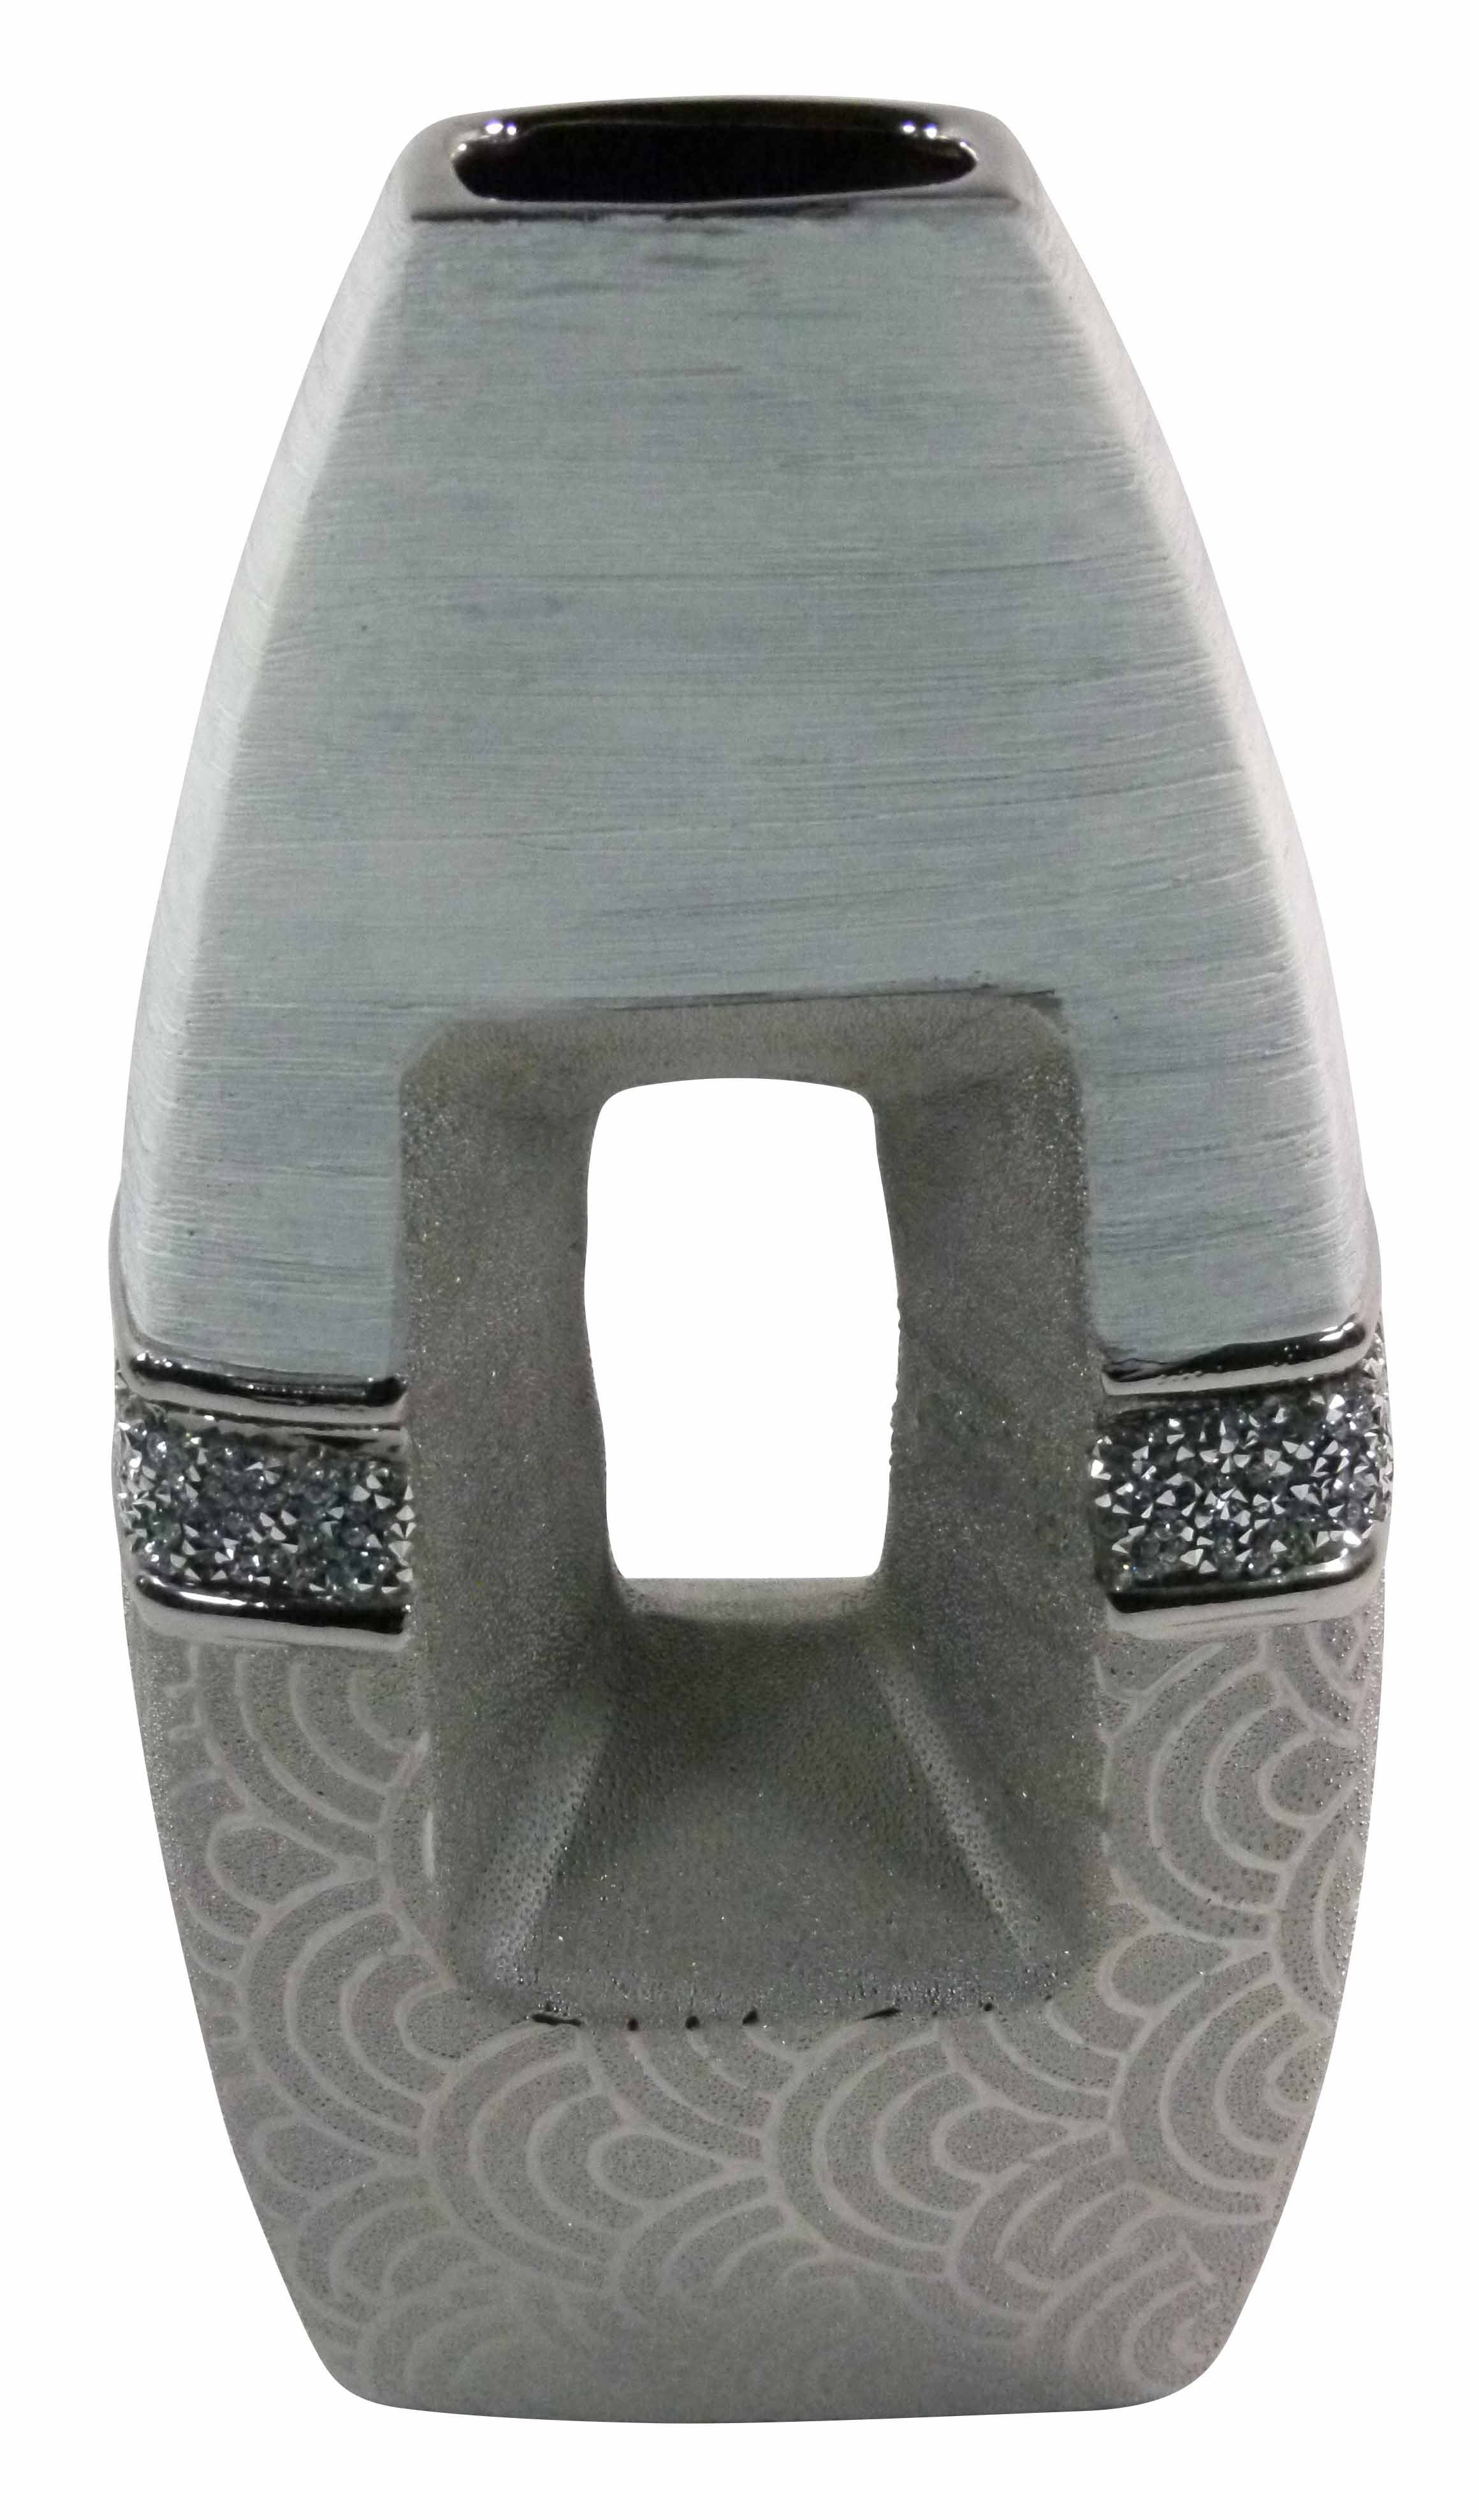 GlasArt Tischvase Vase 'Brokat' Strass hellgrau silber Dekovase oval 27,5cm hoch 14,5cm breit (Einzelstück, 1 St., kein Set), Mit Durchbruch